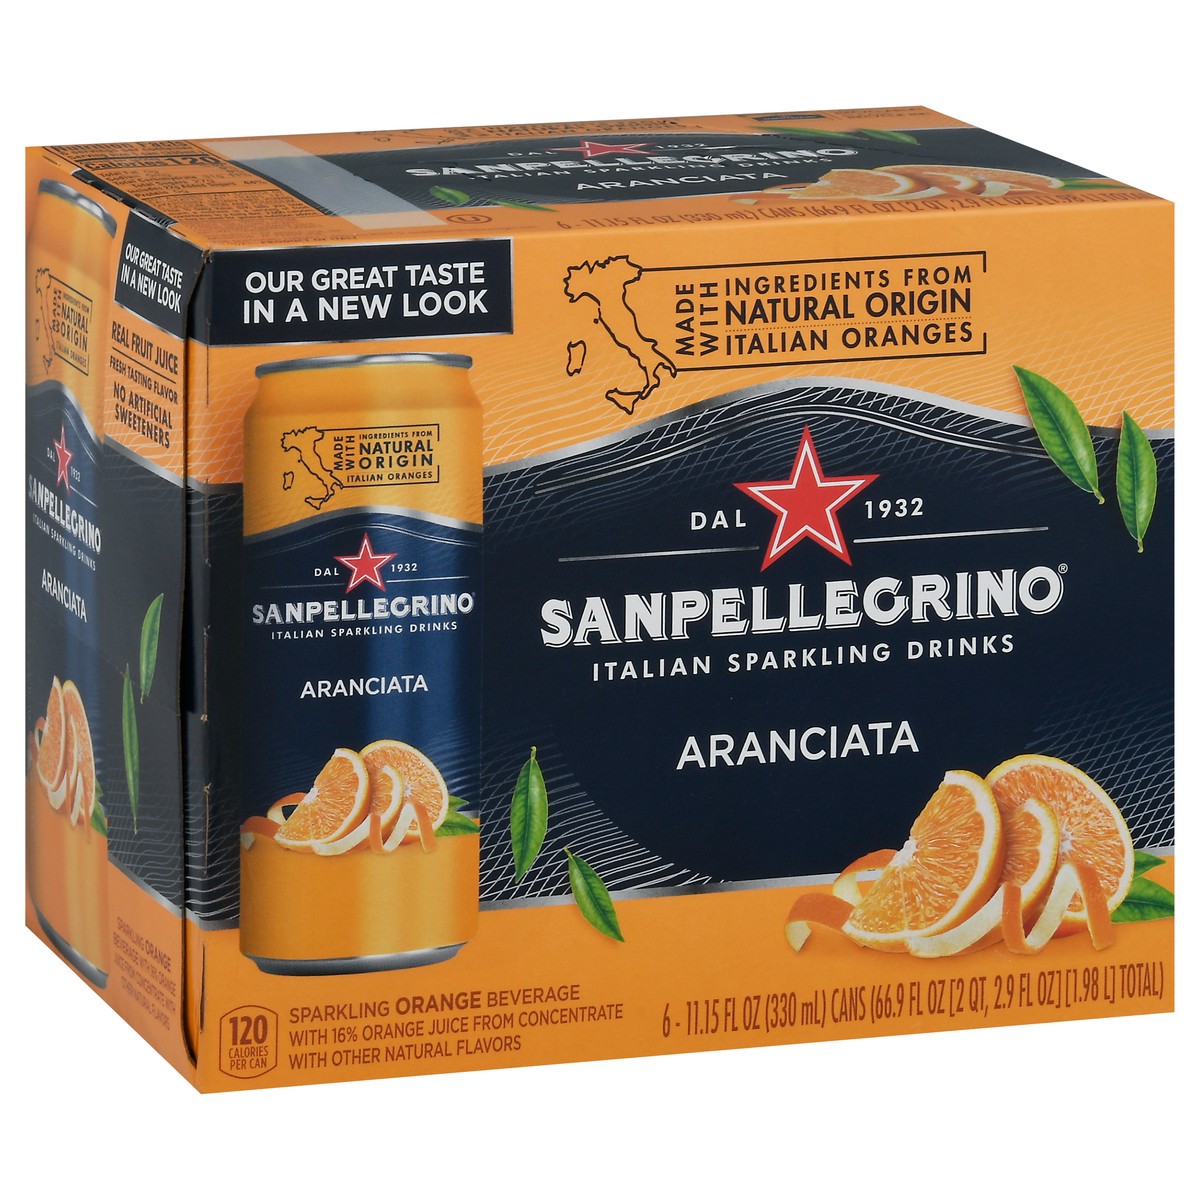 slide 2 of 9, San Pellegrino Italian Sparkling Drink Aranciata, Sparkling Orange Beverage, 6 Pack of Cans, 66.9 oz